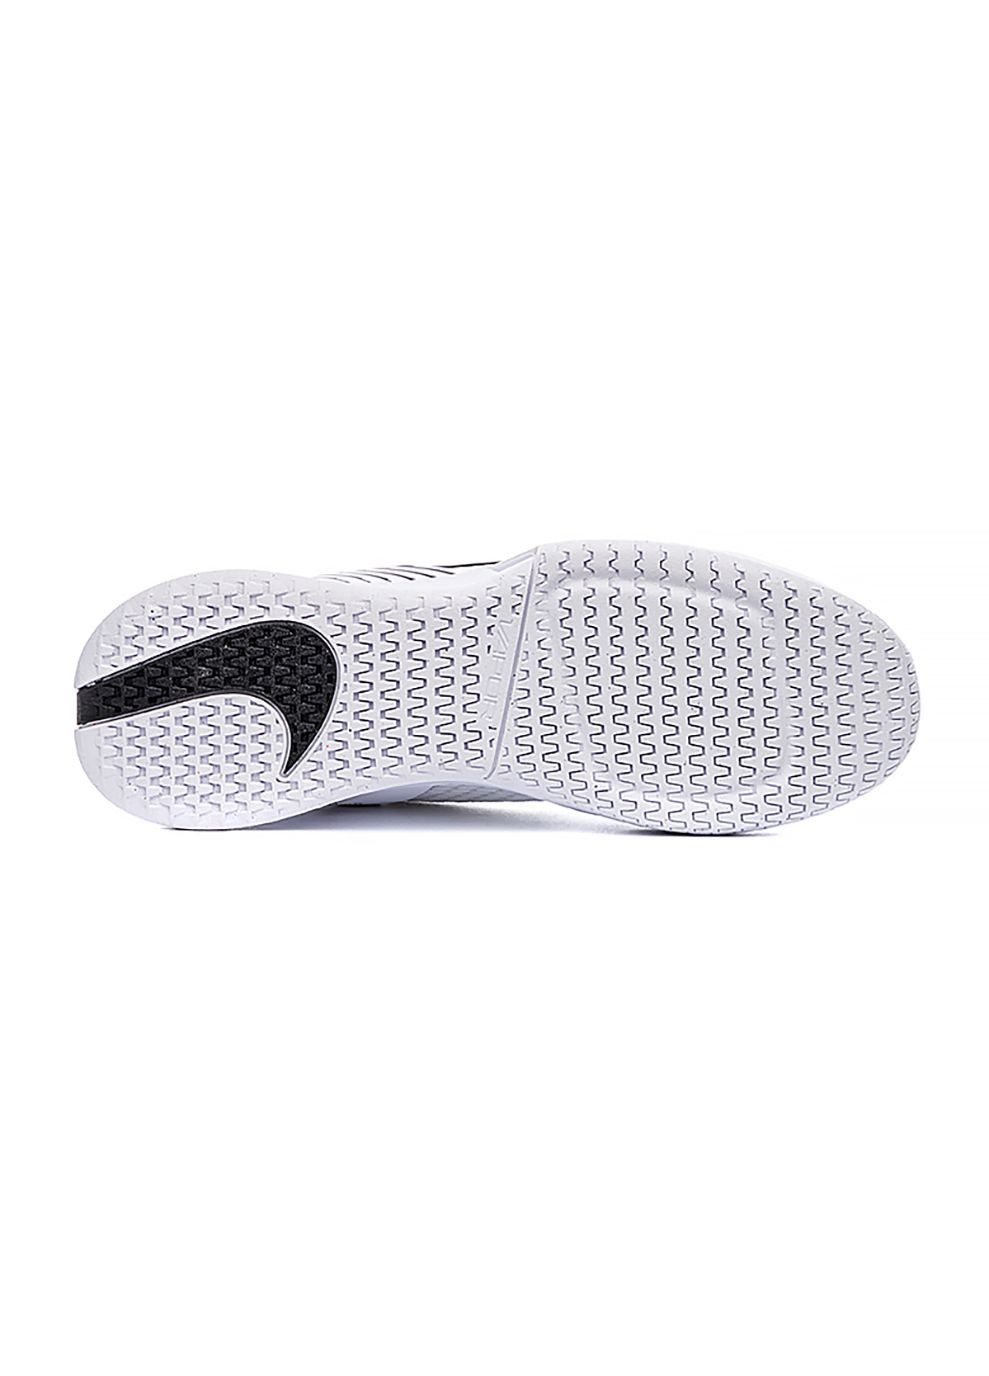 Білі всесезонні жіночі кросівки zoom vapor pro 2 hc білий Nike